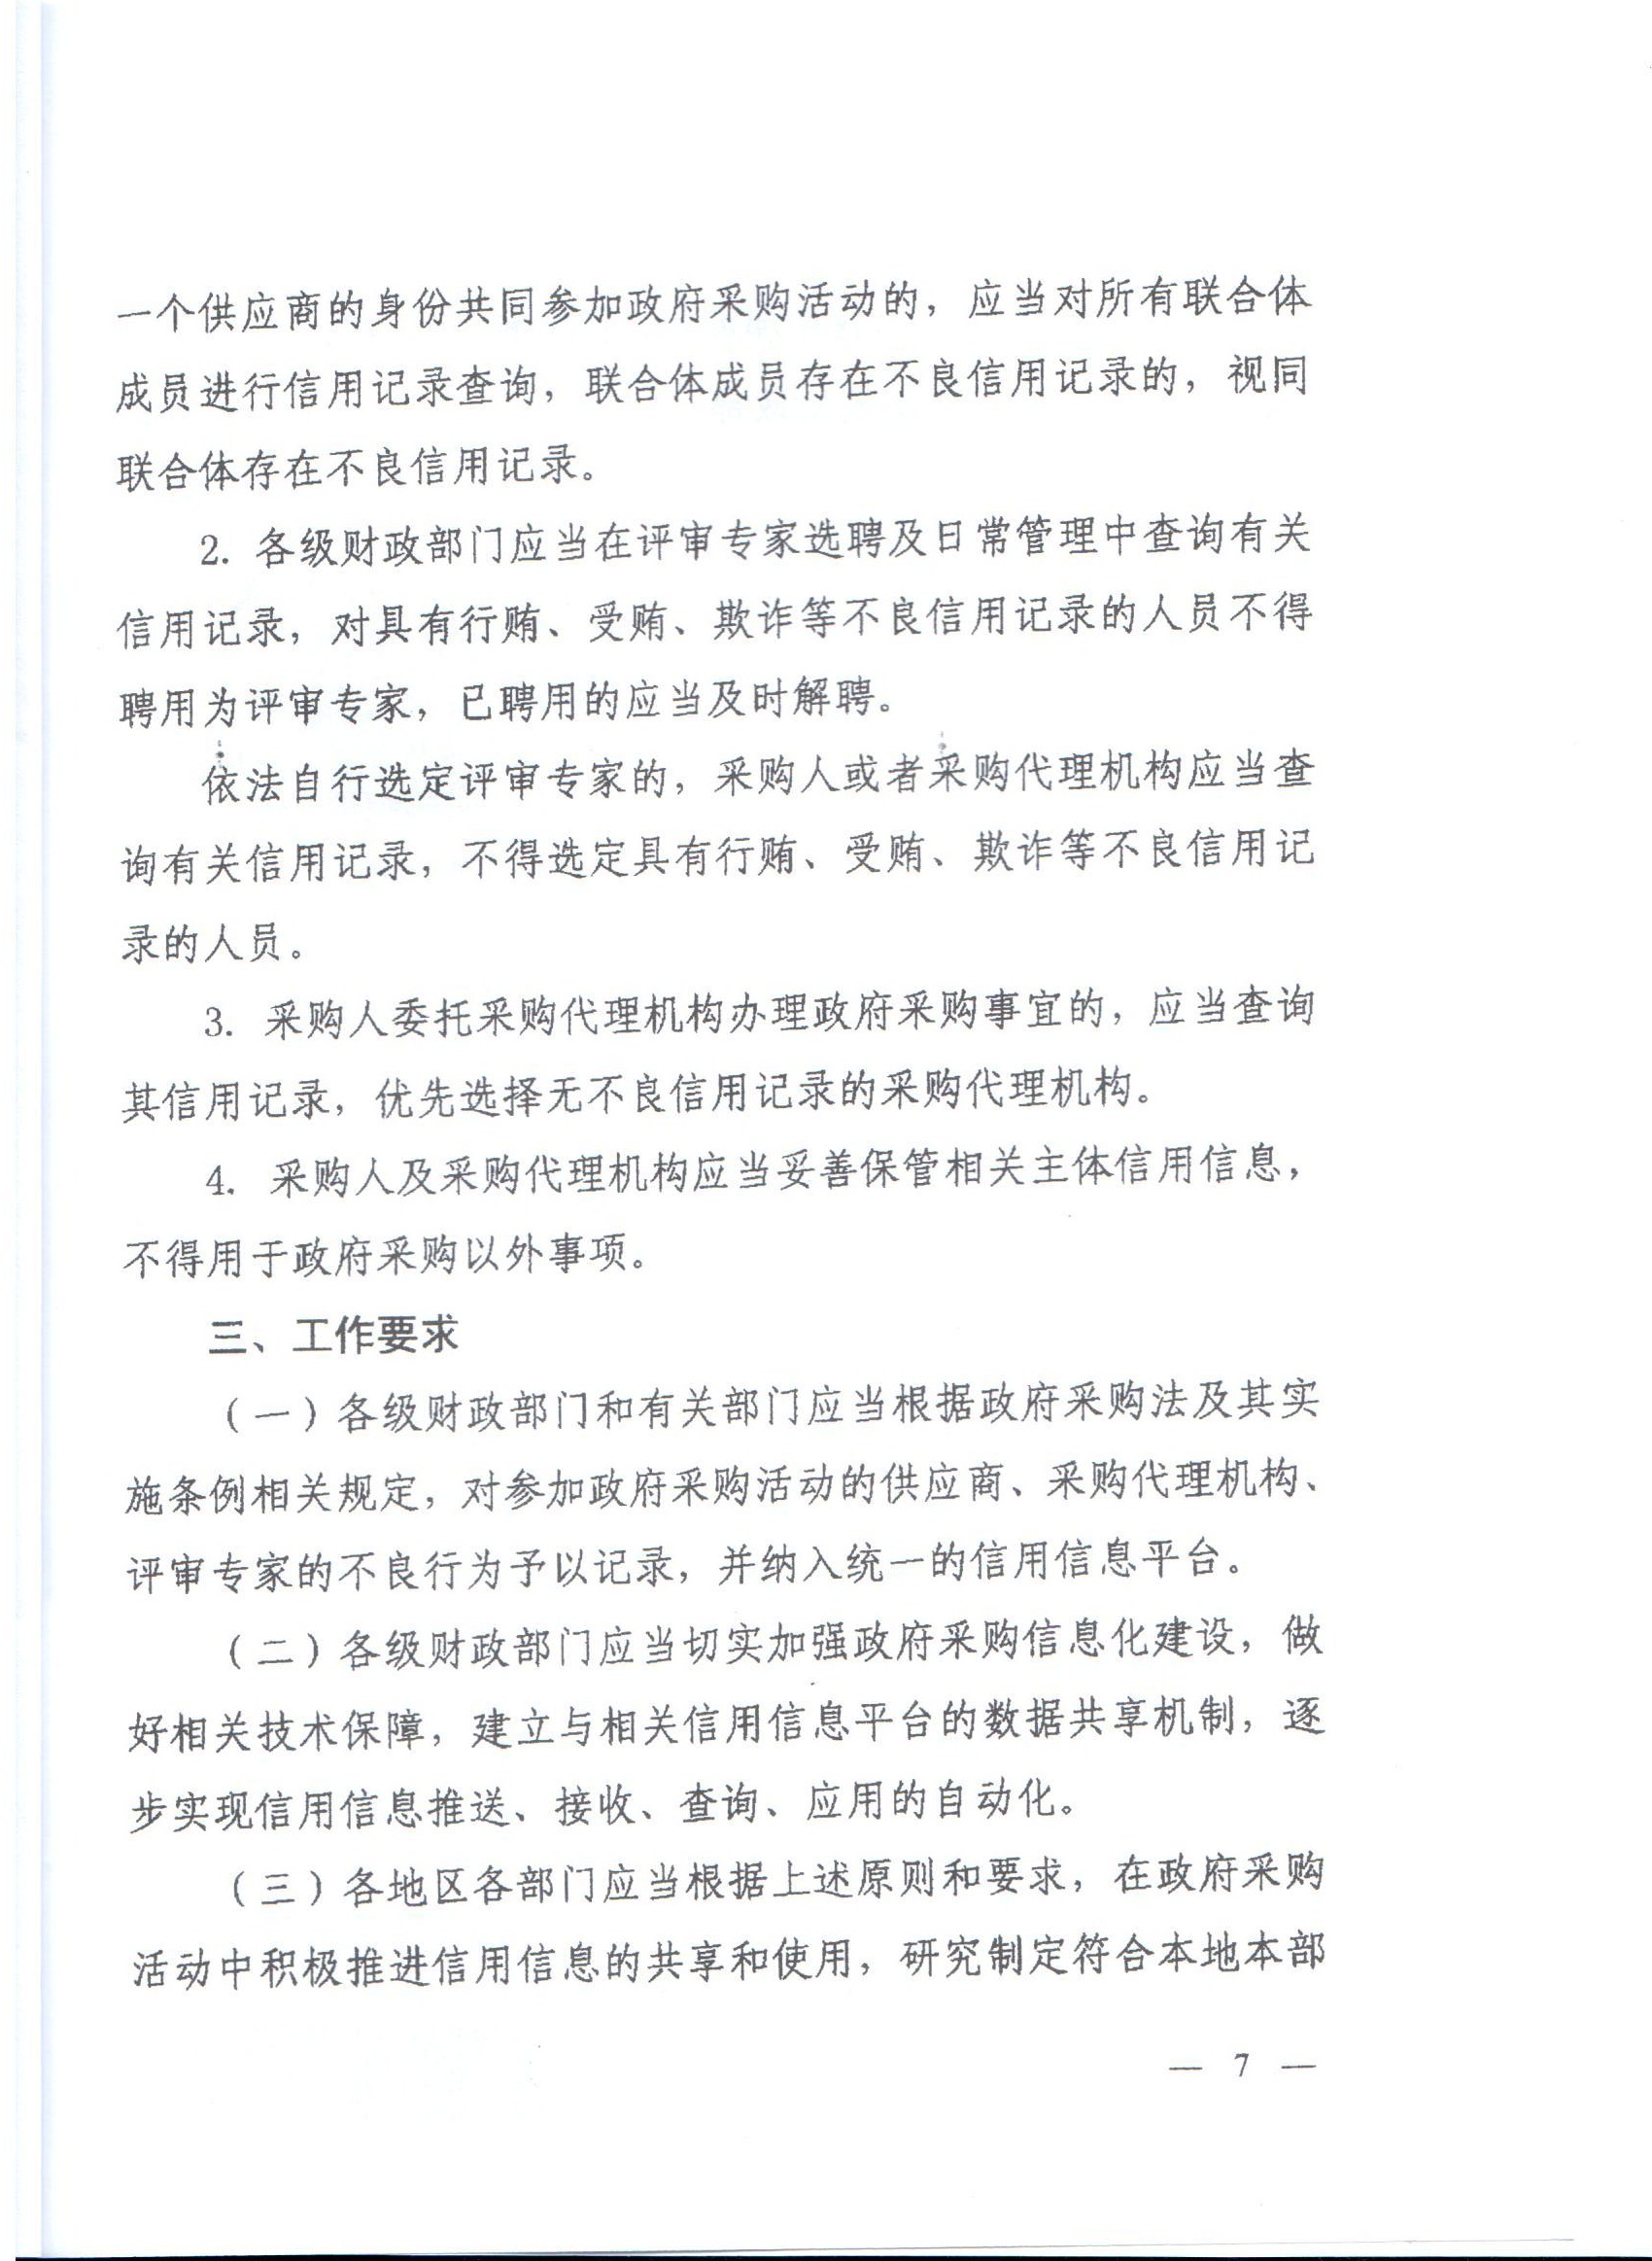 河南省财政厅转发财政部关于在政府采购活动中查询及使用信用记录有关问题的通知的通知(图7)